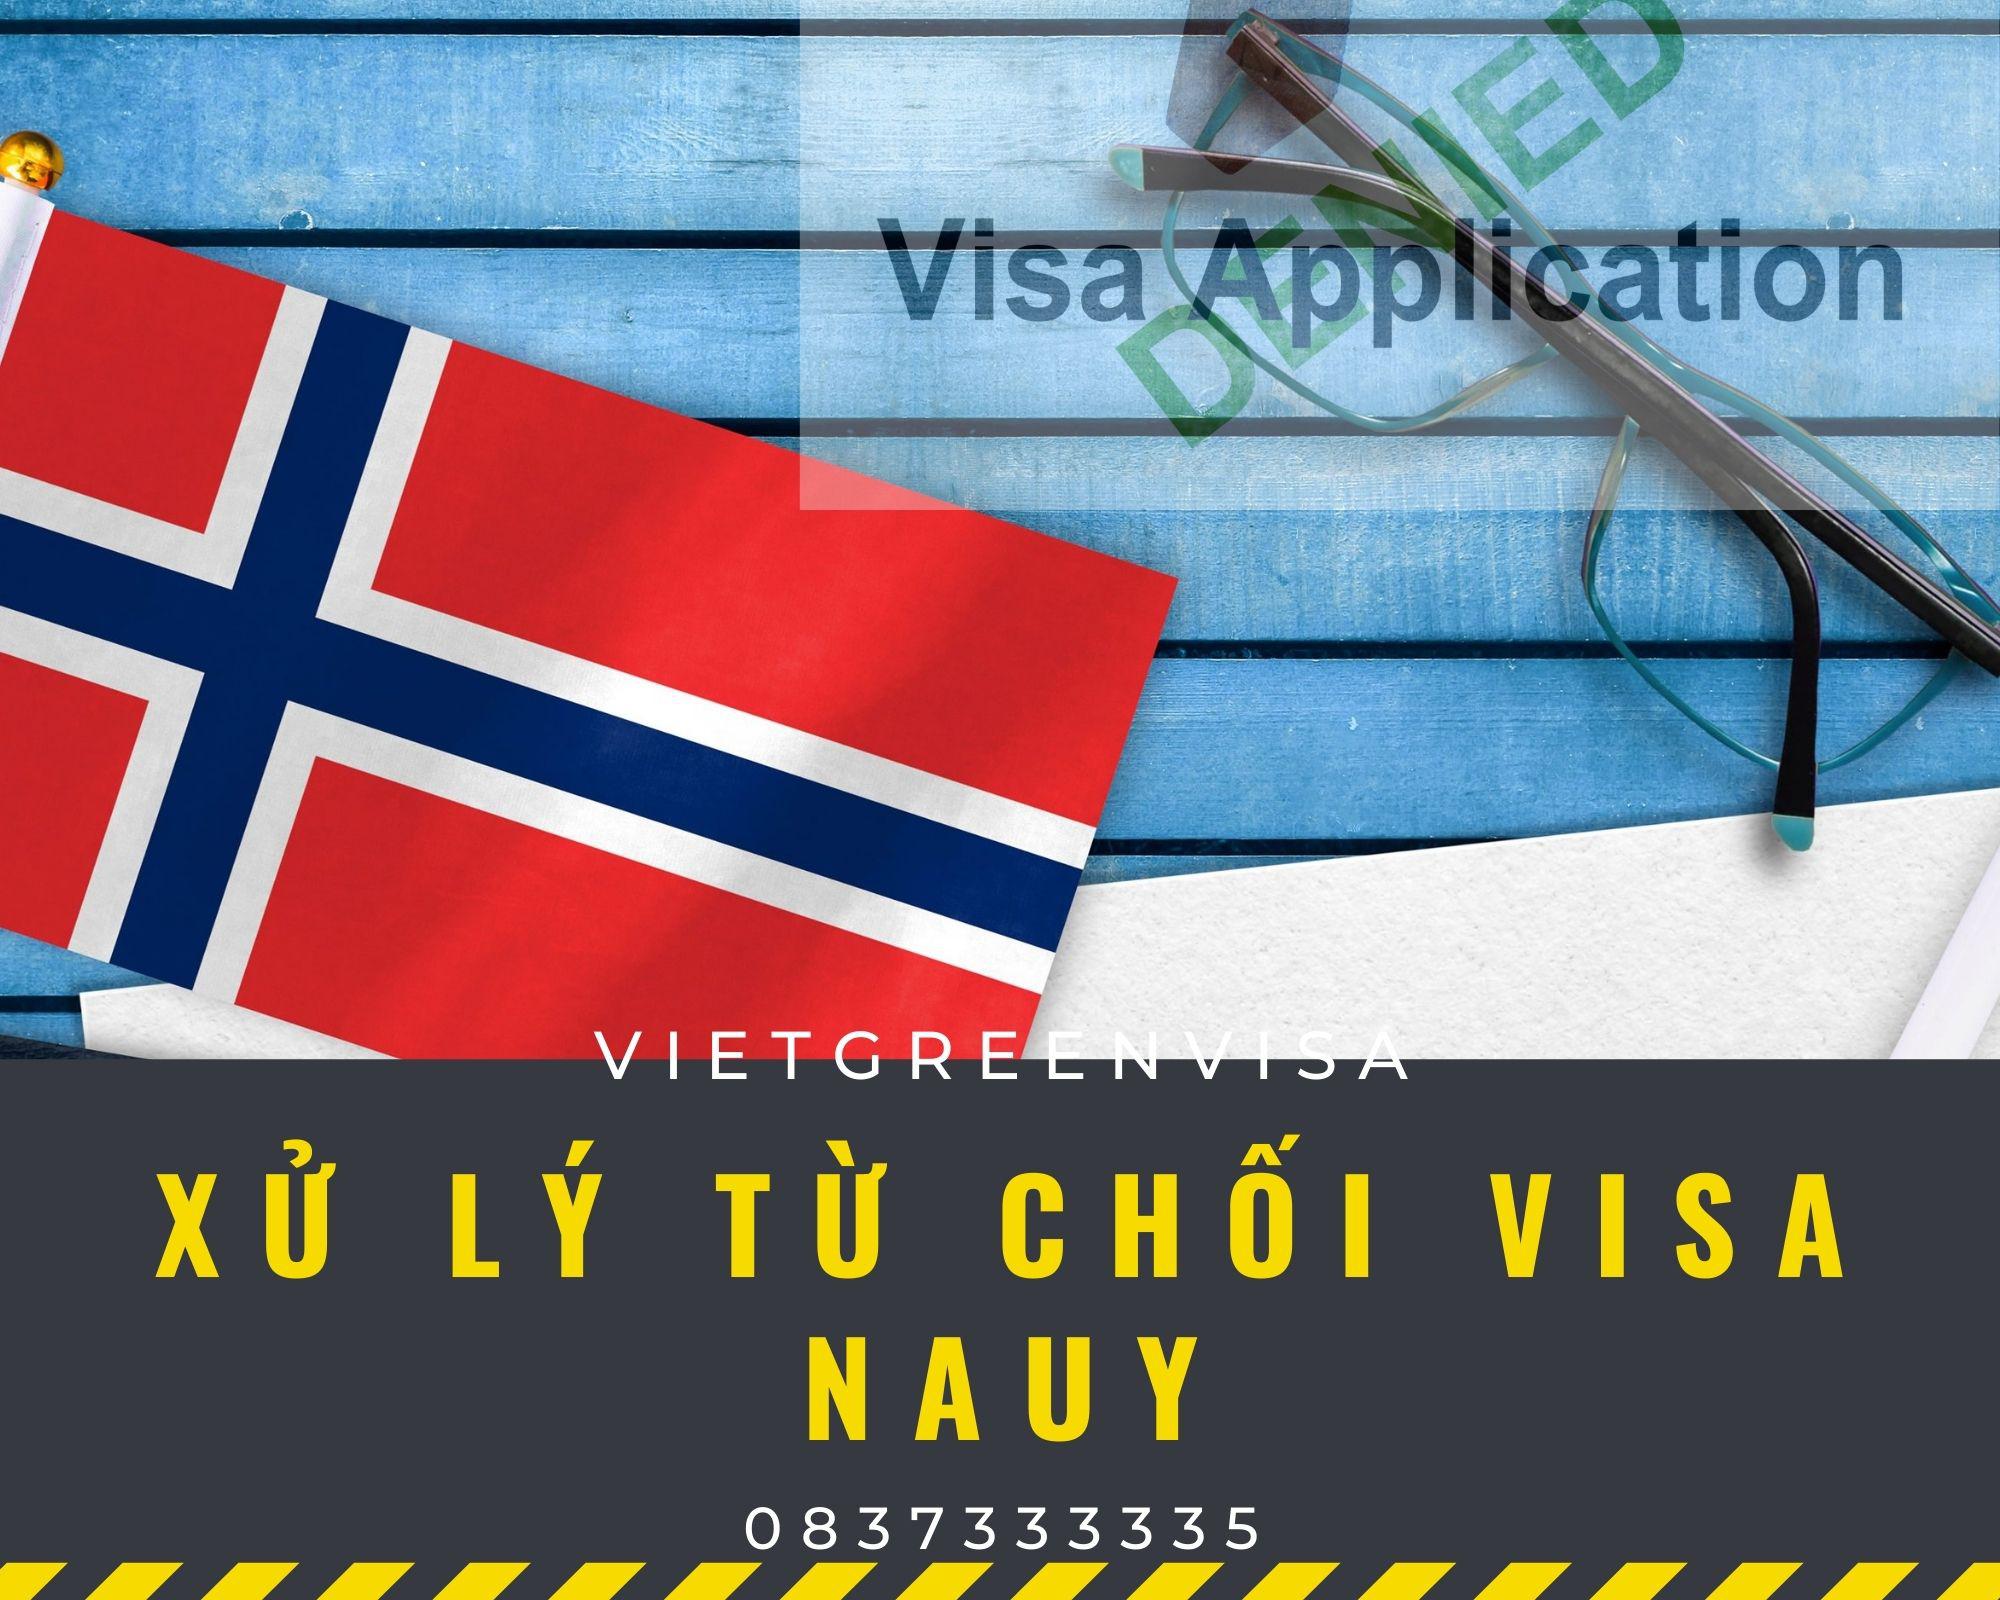 Dịch vụ xử lý visa Nauy bị từ chối uy tín | VietGreenVisa